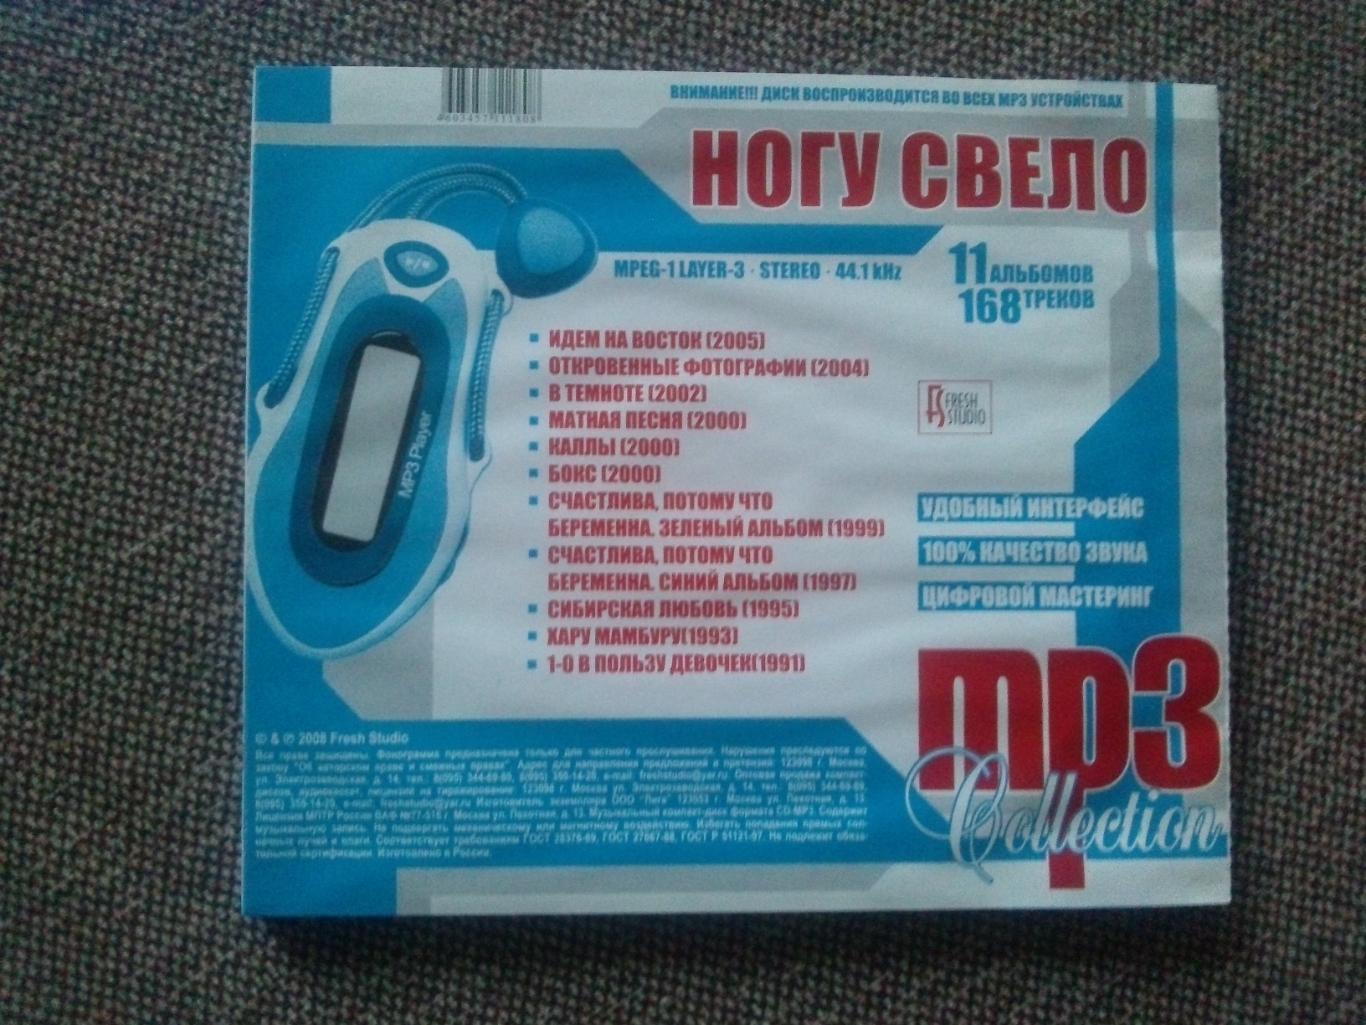 MP - 3 CD диск : группаНогу свело1991 - 2005 гг. 11 альбомов Рок - музыка 7